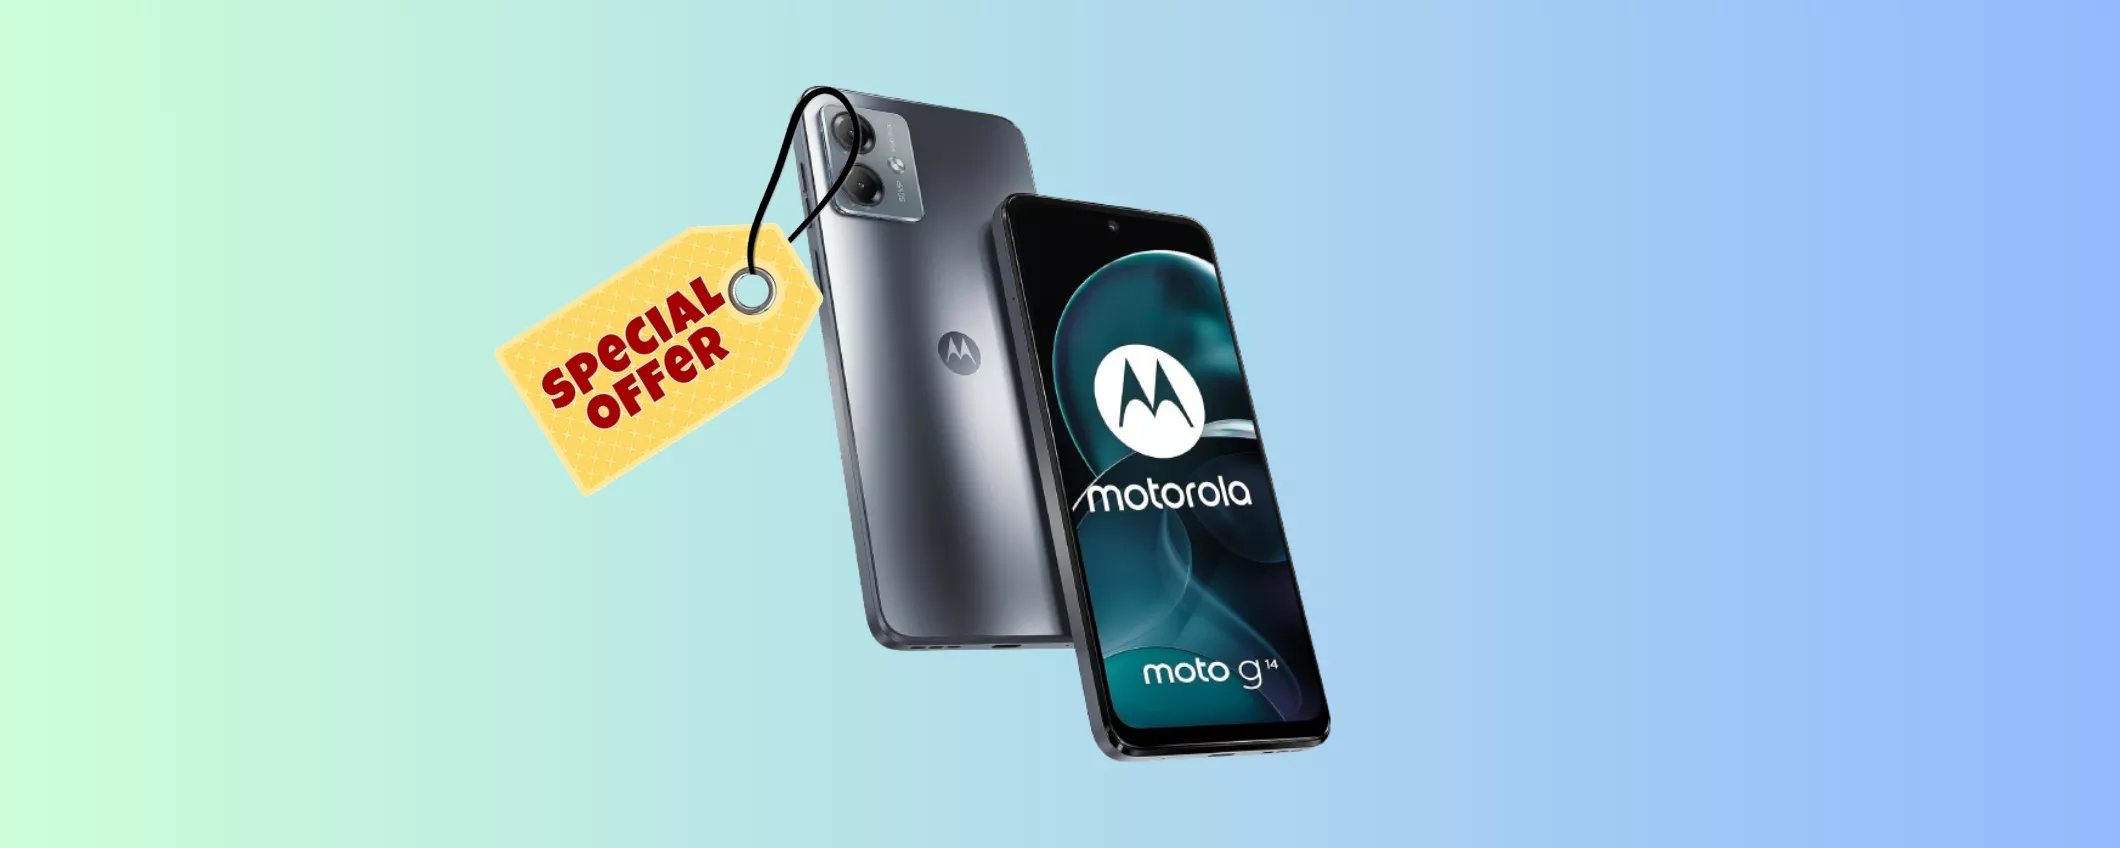 Motorola moto g13 a MENO DI META' PREZZO: oggi è tuo a SOLI 89 EURO